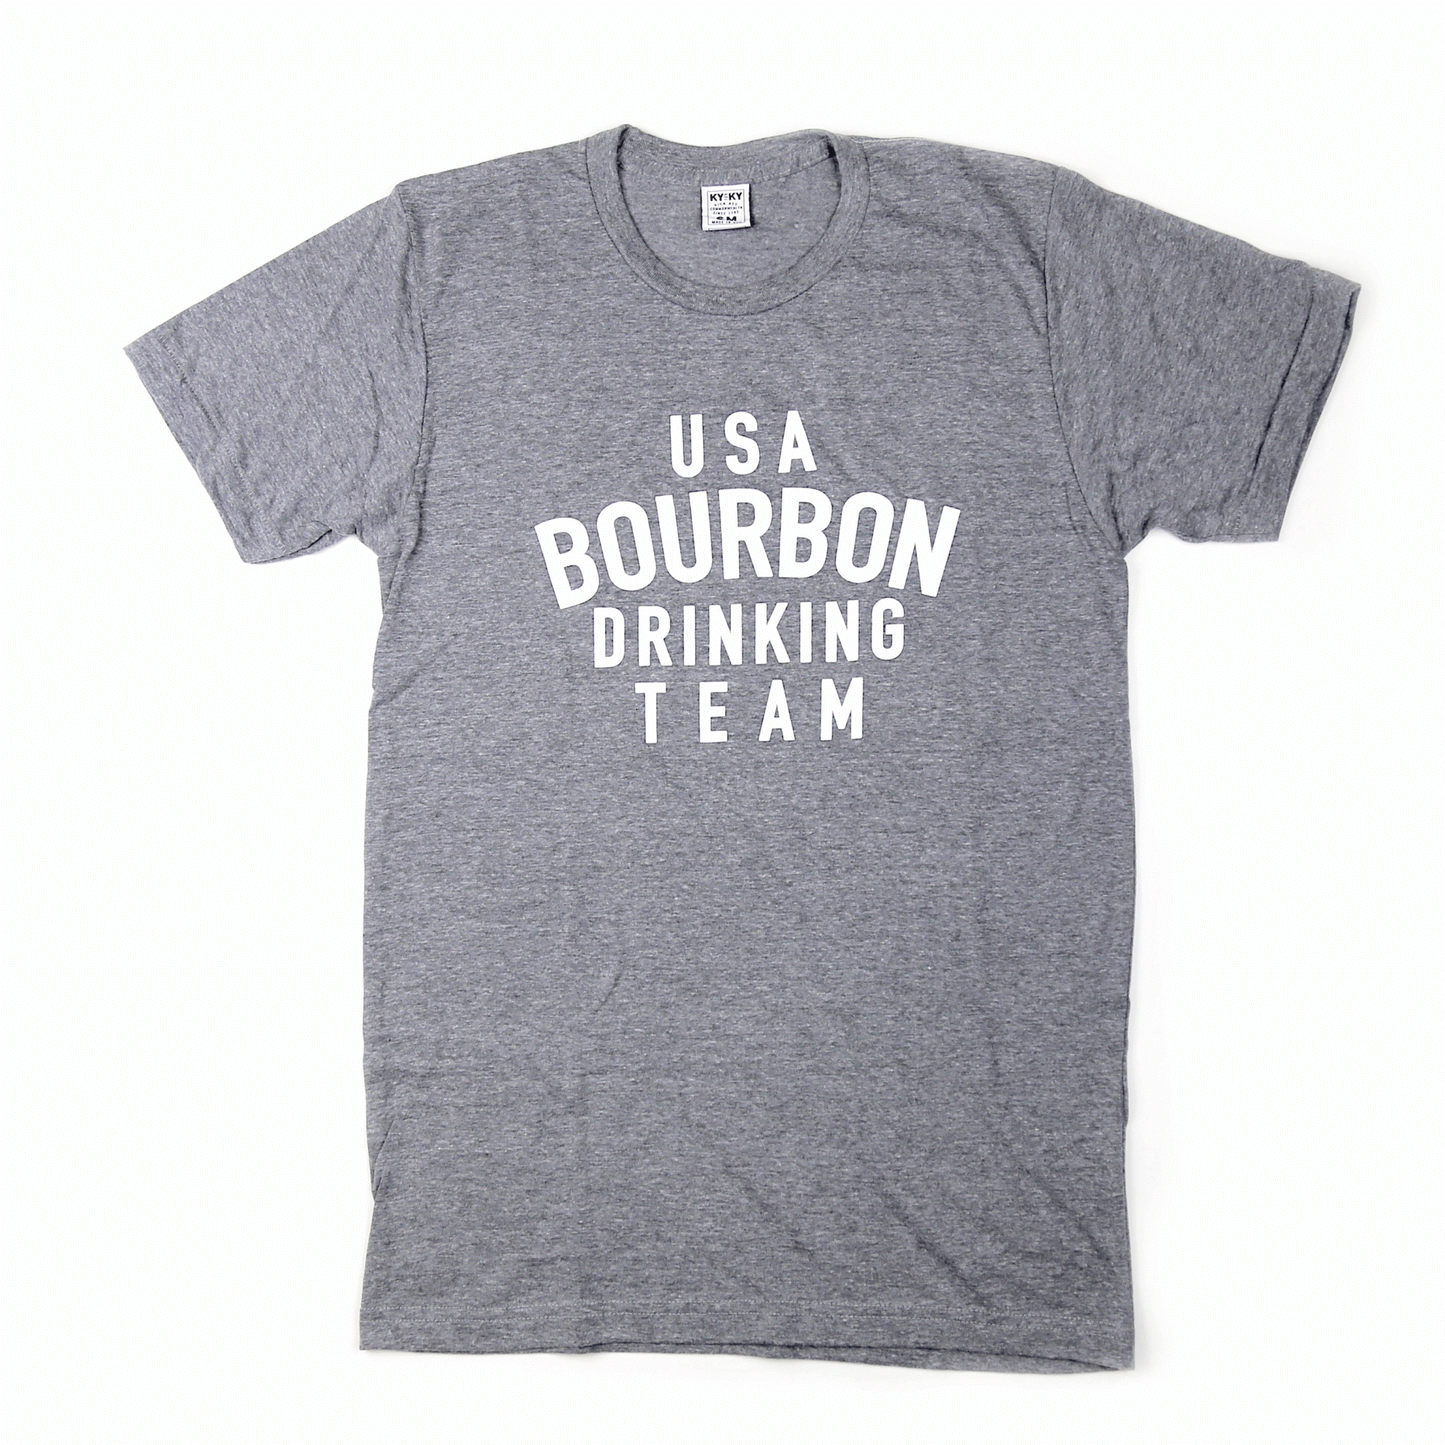 USA Bourbon Drinking Team Shirt